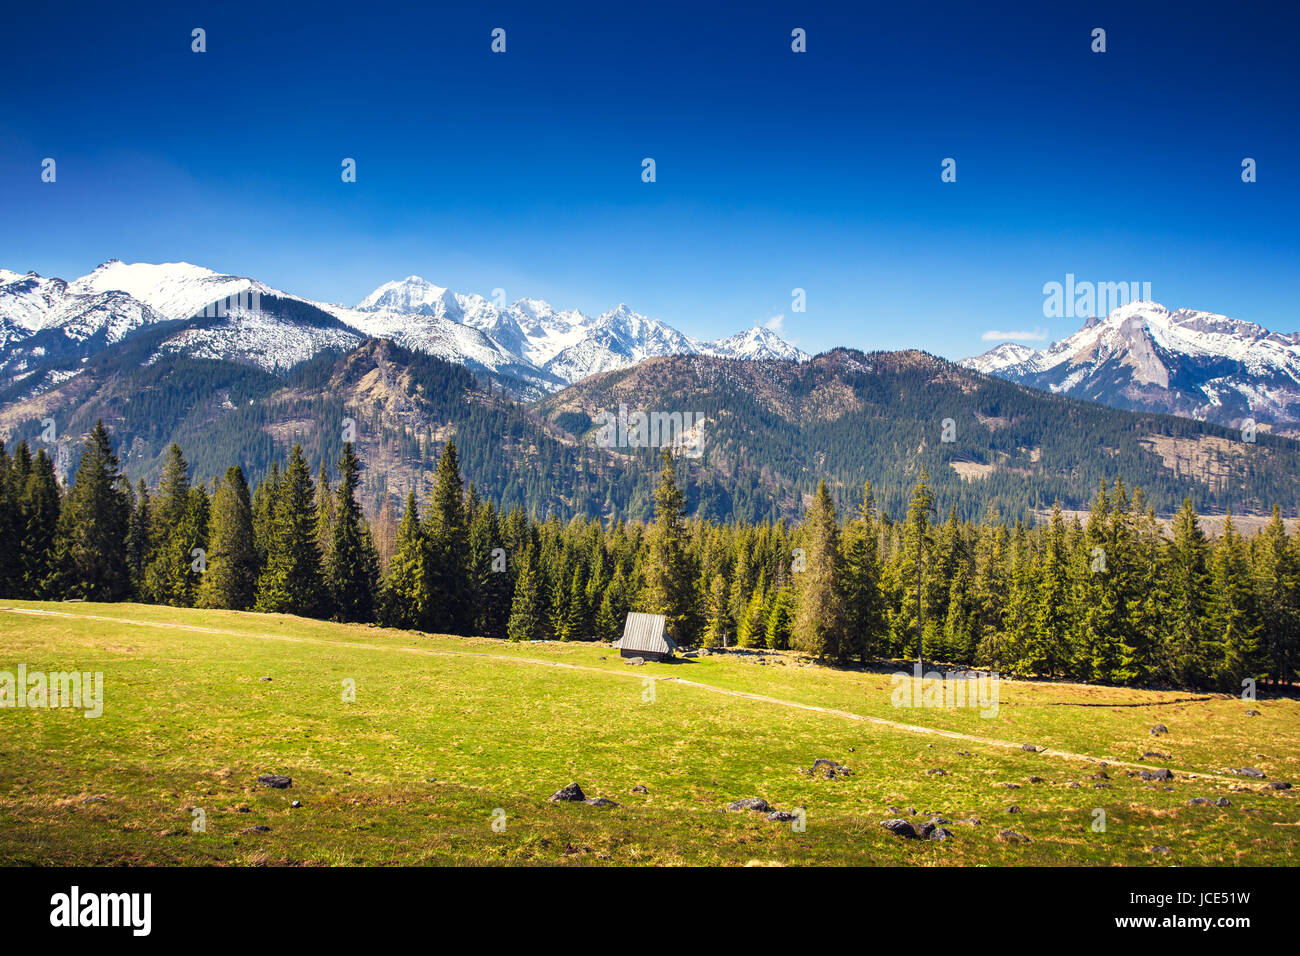 Picteresque Alpental an einem sonnigen Sommertag. Blauer Himmel über weißen, schneebedeckten Gipfeln. Bunte lebendige Alpine Landschaft. Stockfoto